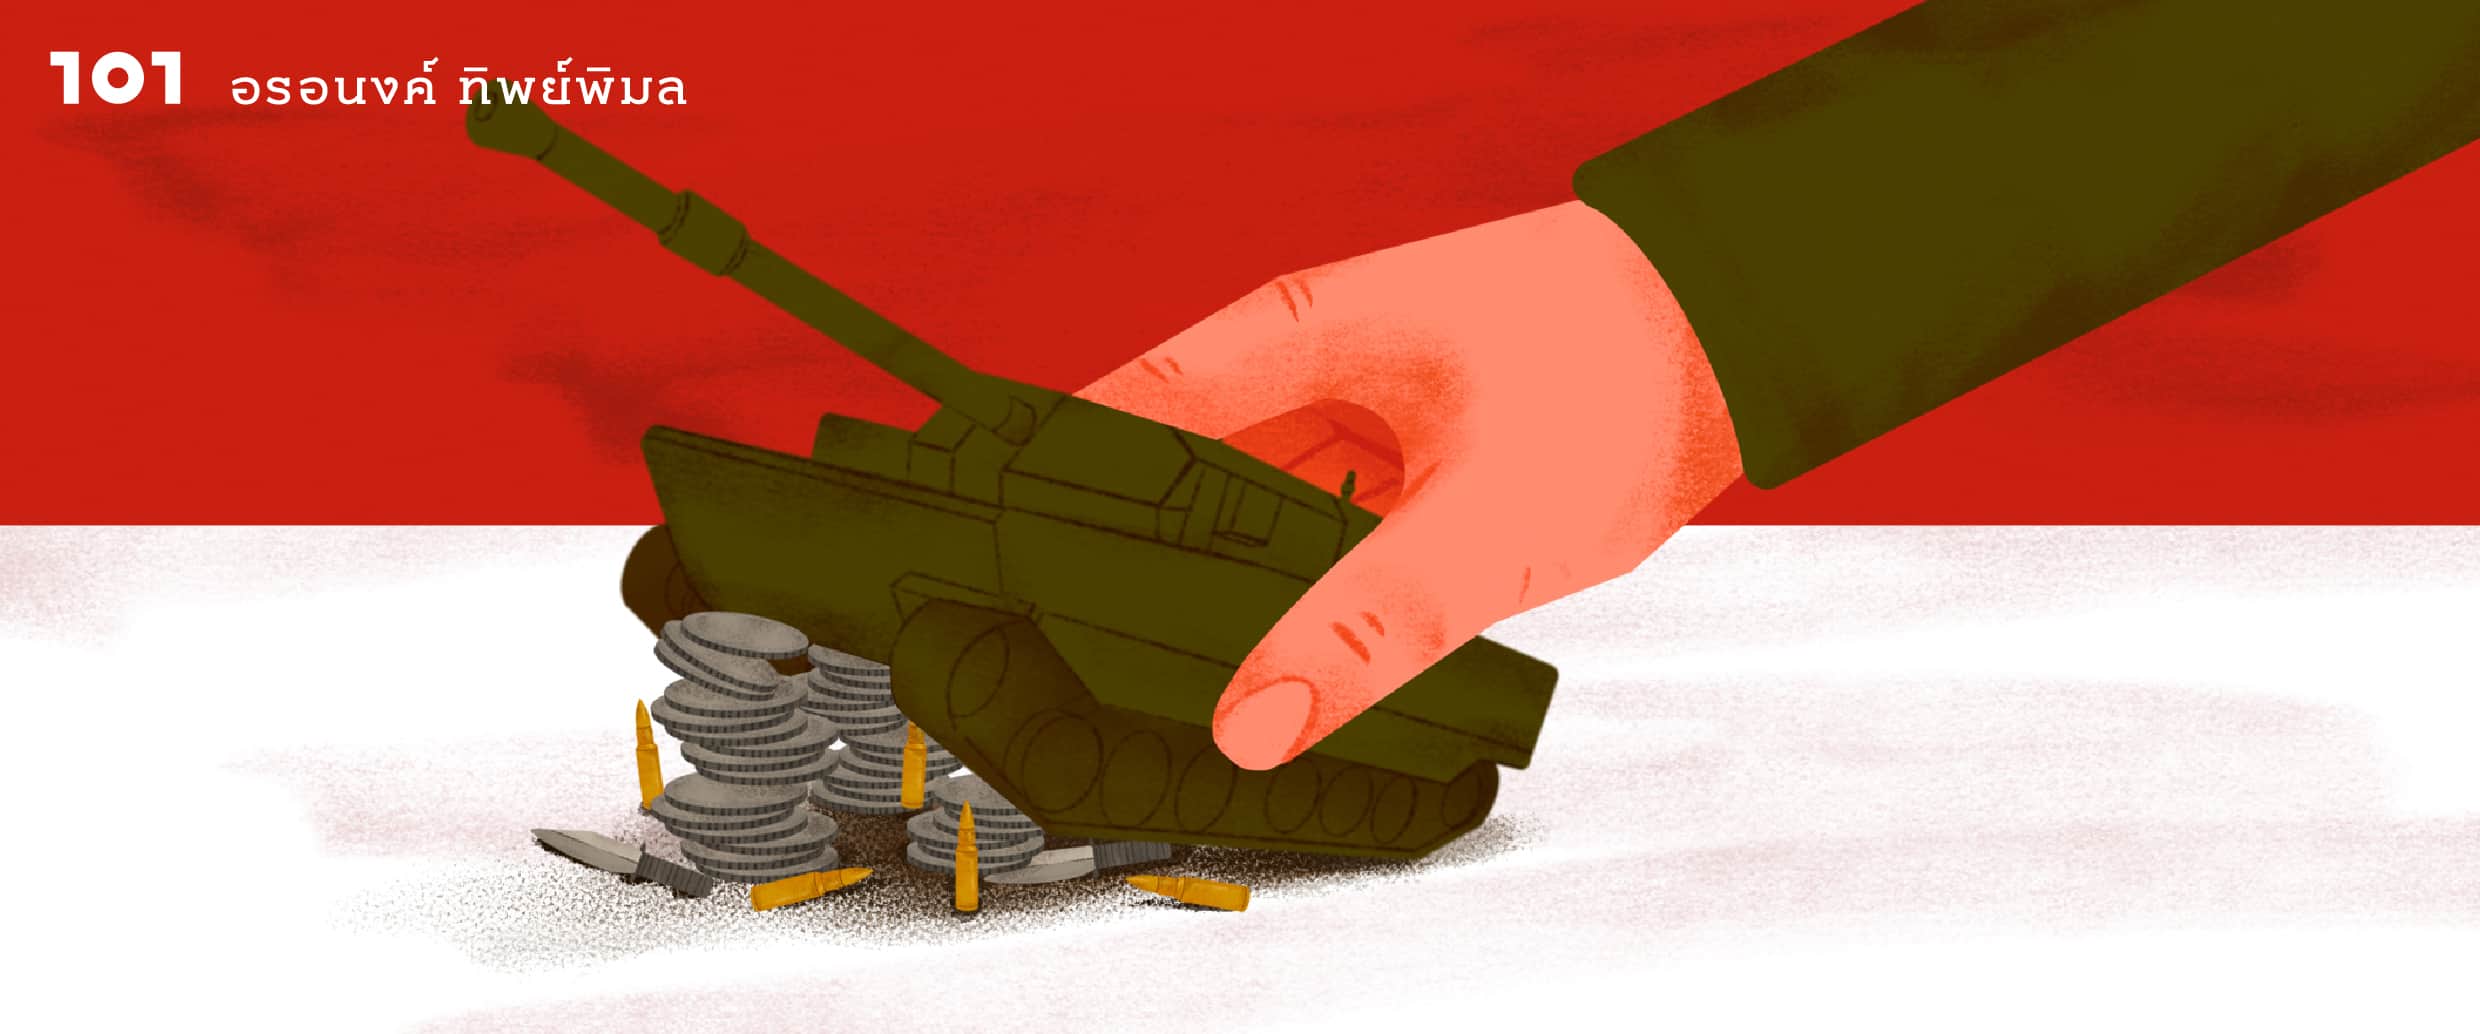 เป็นทหารทำไมรวยจัง?: ทหารอินโดนีเซียกับธุรกิจตั้งแต่ประกาศเอกราชจนถึงปัจจุบัน